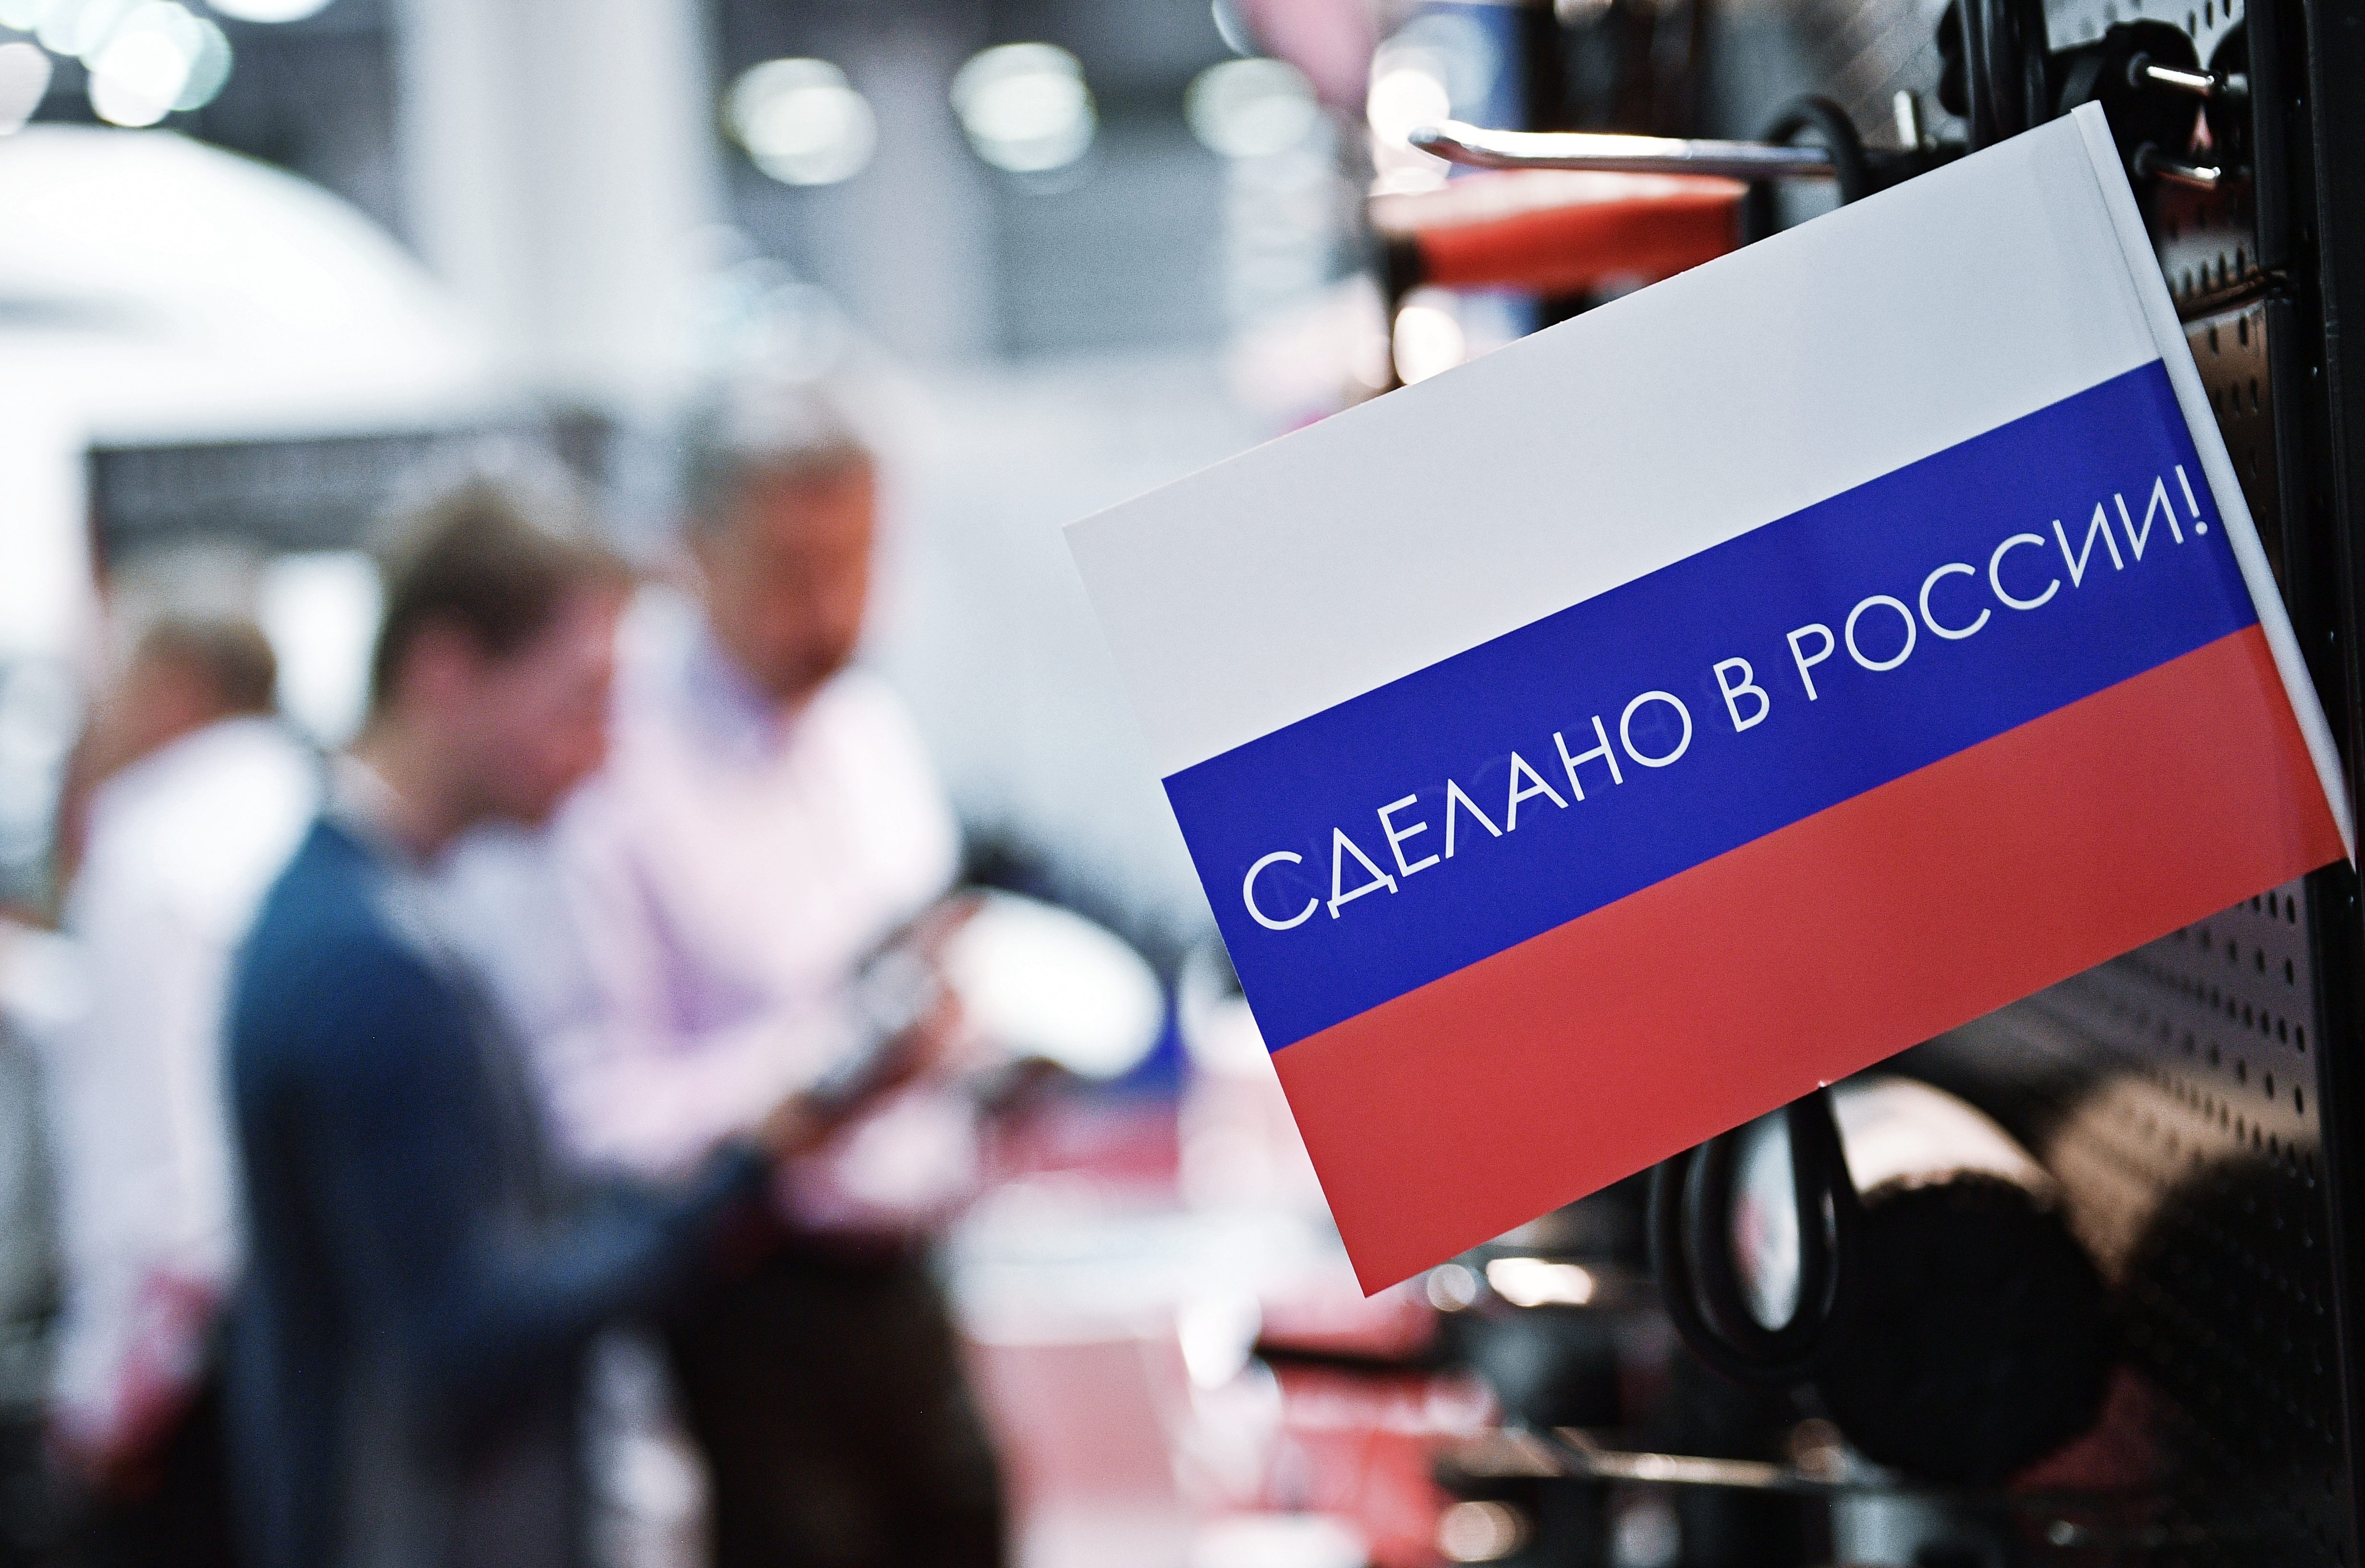 Сенаторы предложили механизм обязательной закупки российских товаров